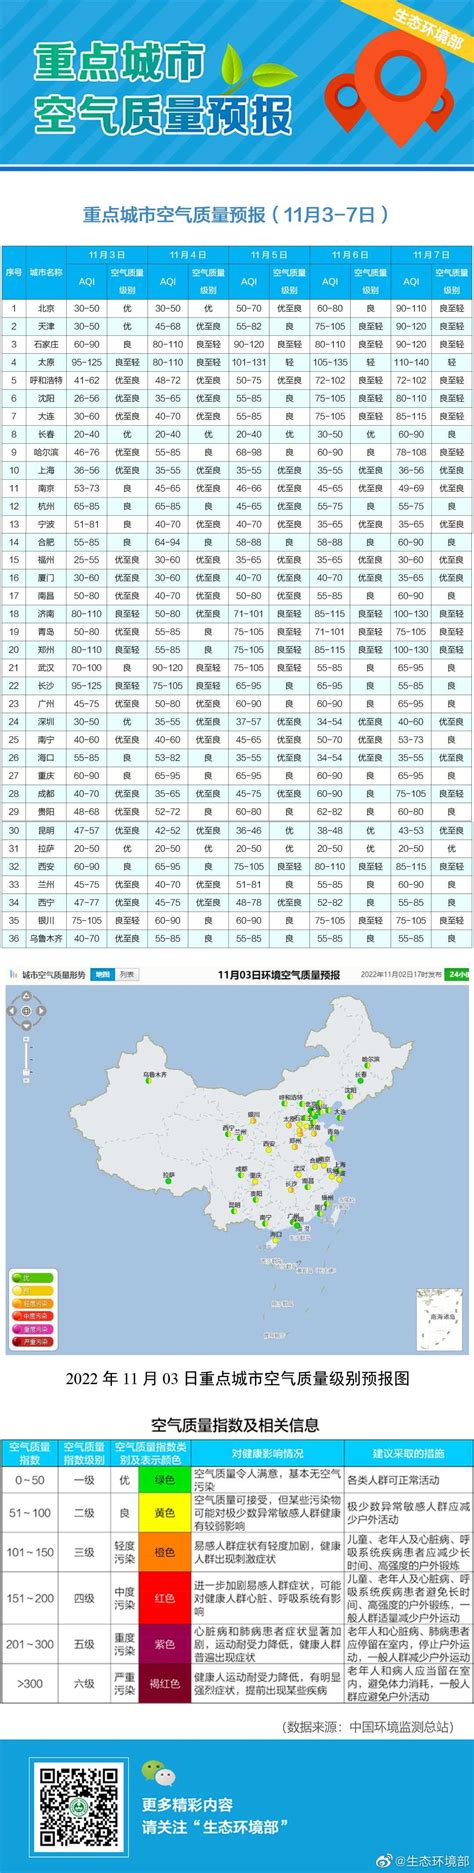 中国空气质量达标城市不足10% “治霾”任重道远 - 国内国际 - 关注 - 济宁新闻网